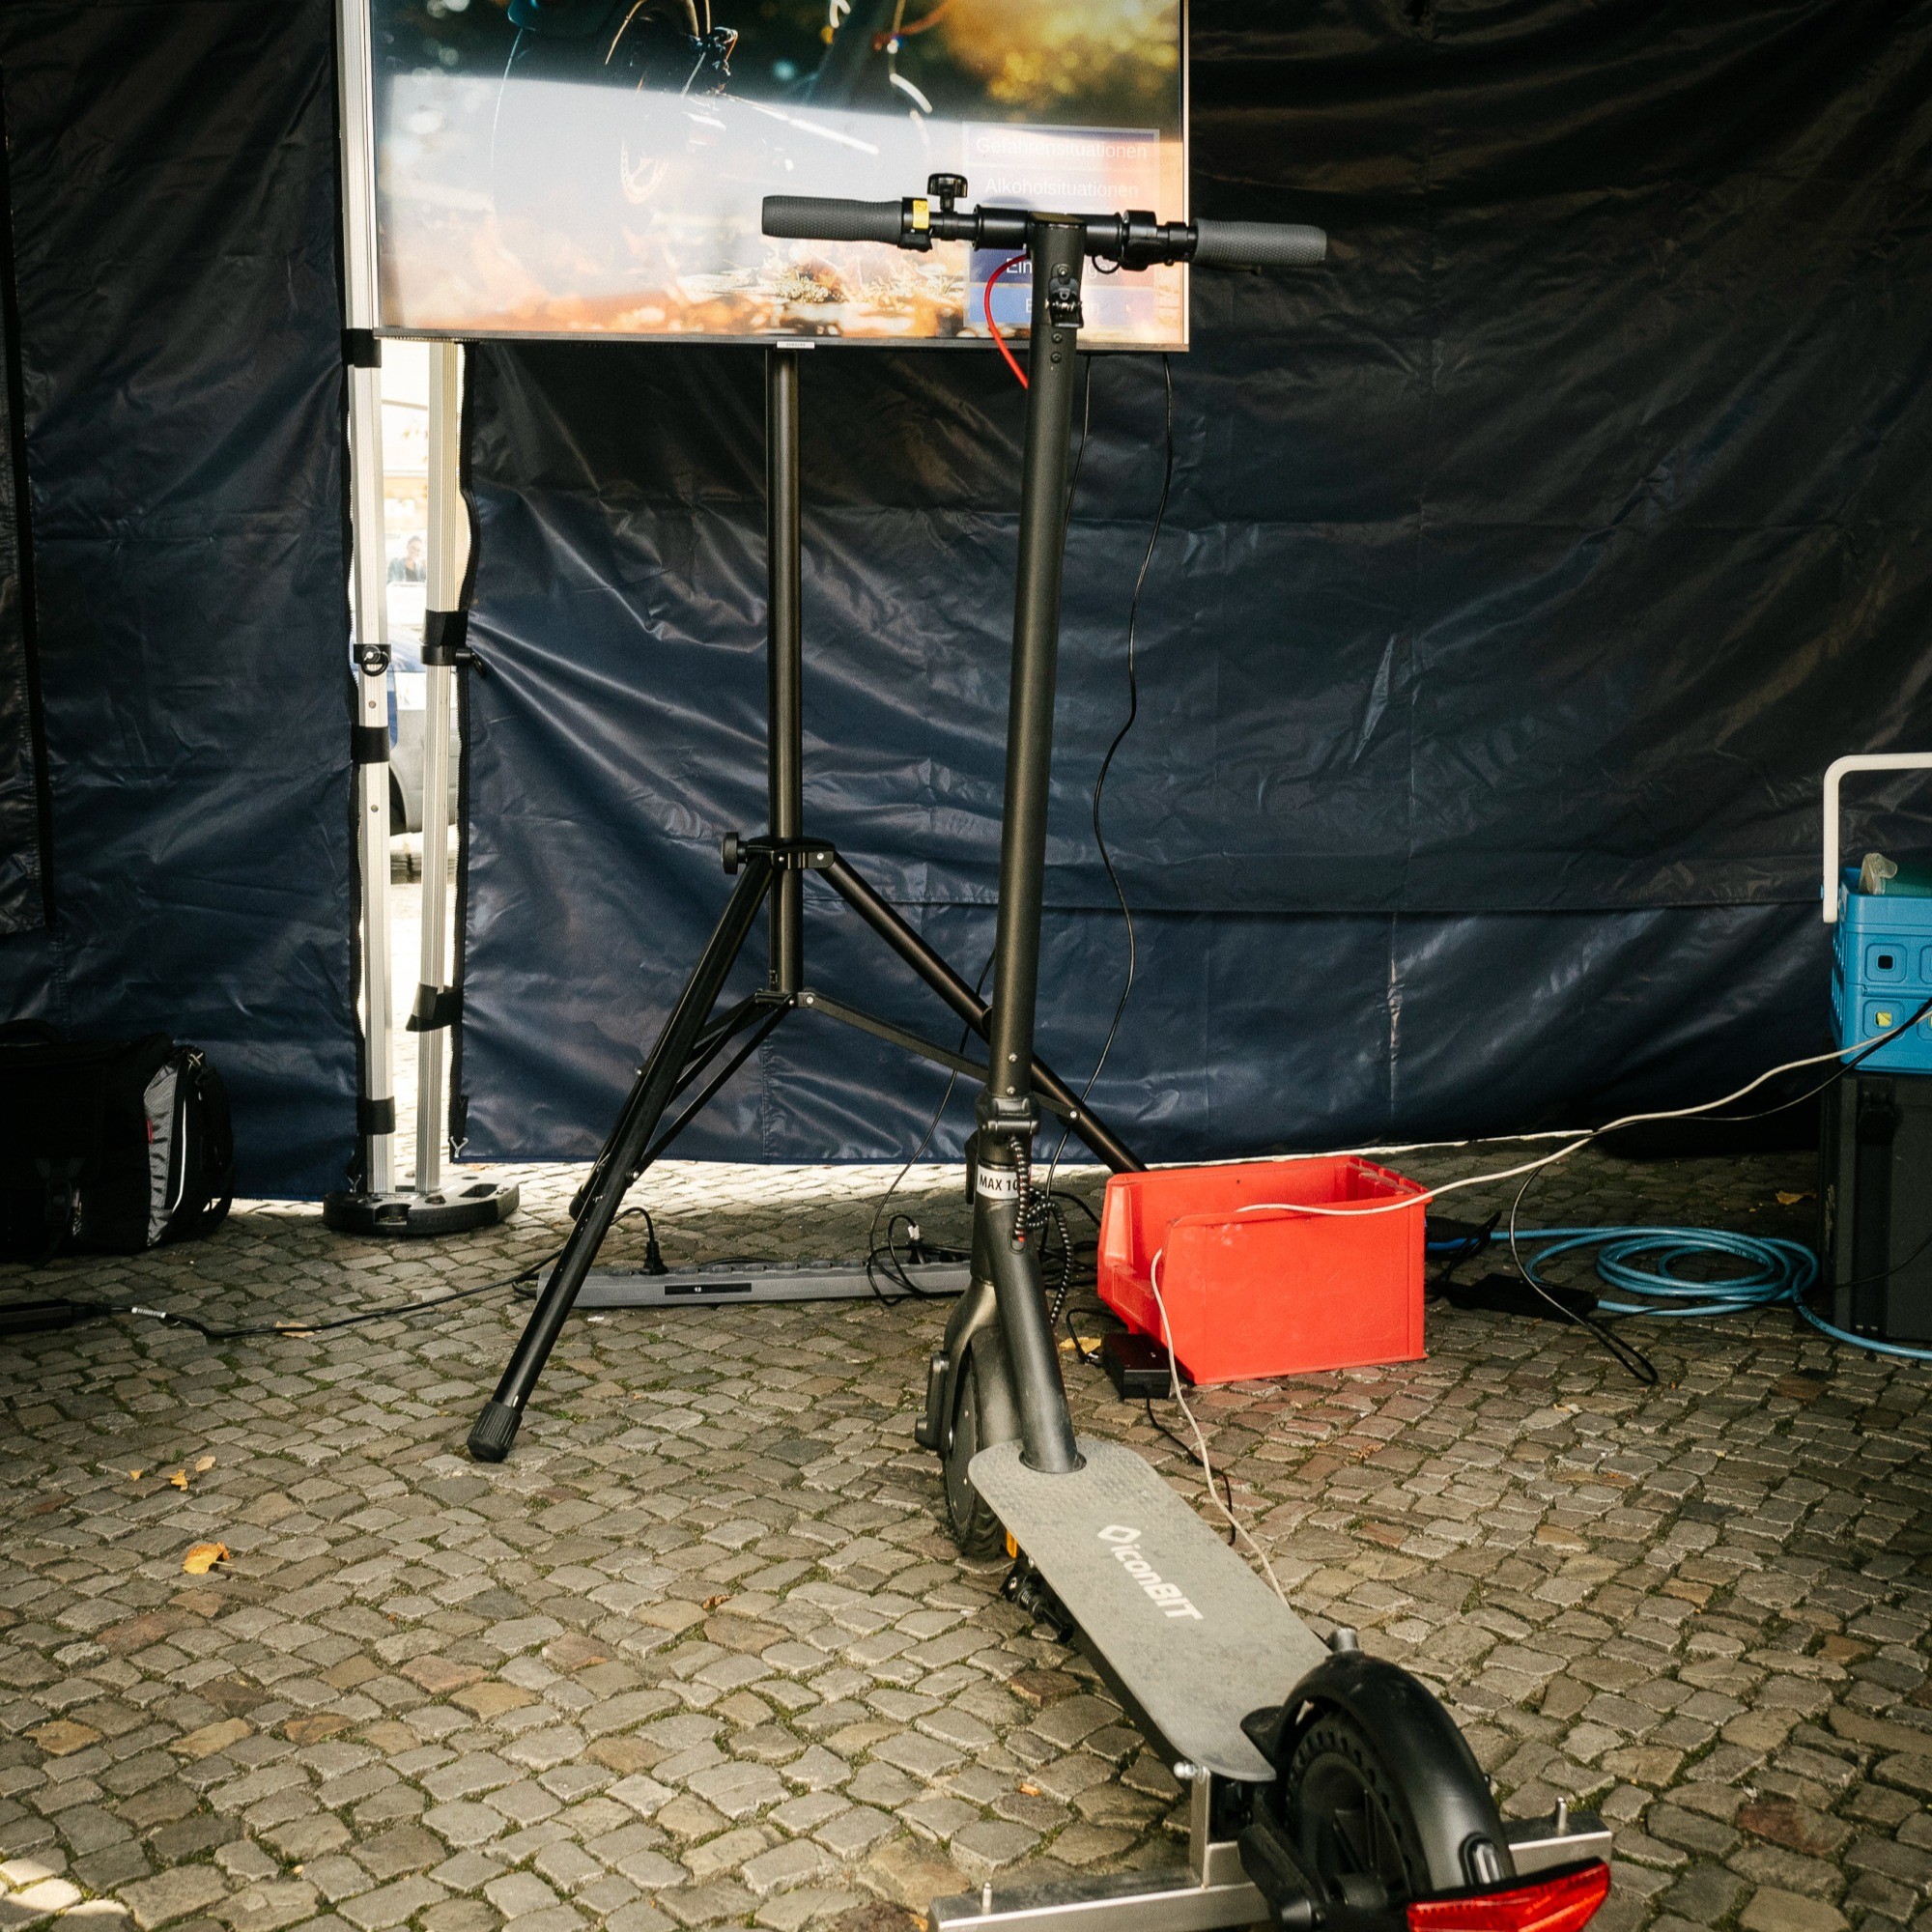 Das Bild zeigt einen Elektroscooter, der an einen Bildschirm angeschlossen ist. Es ist der E-Scooter-Simulator der Polizei Berlin.